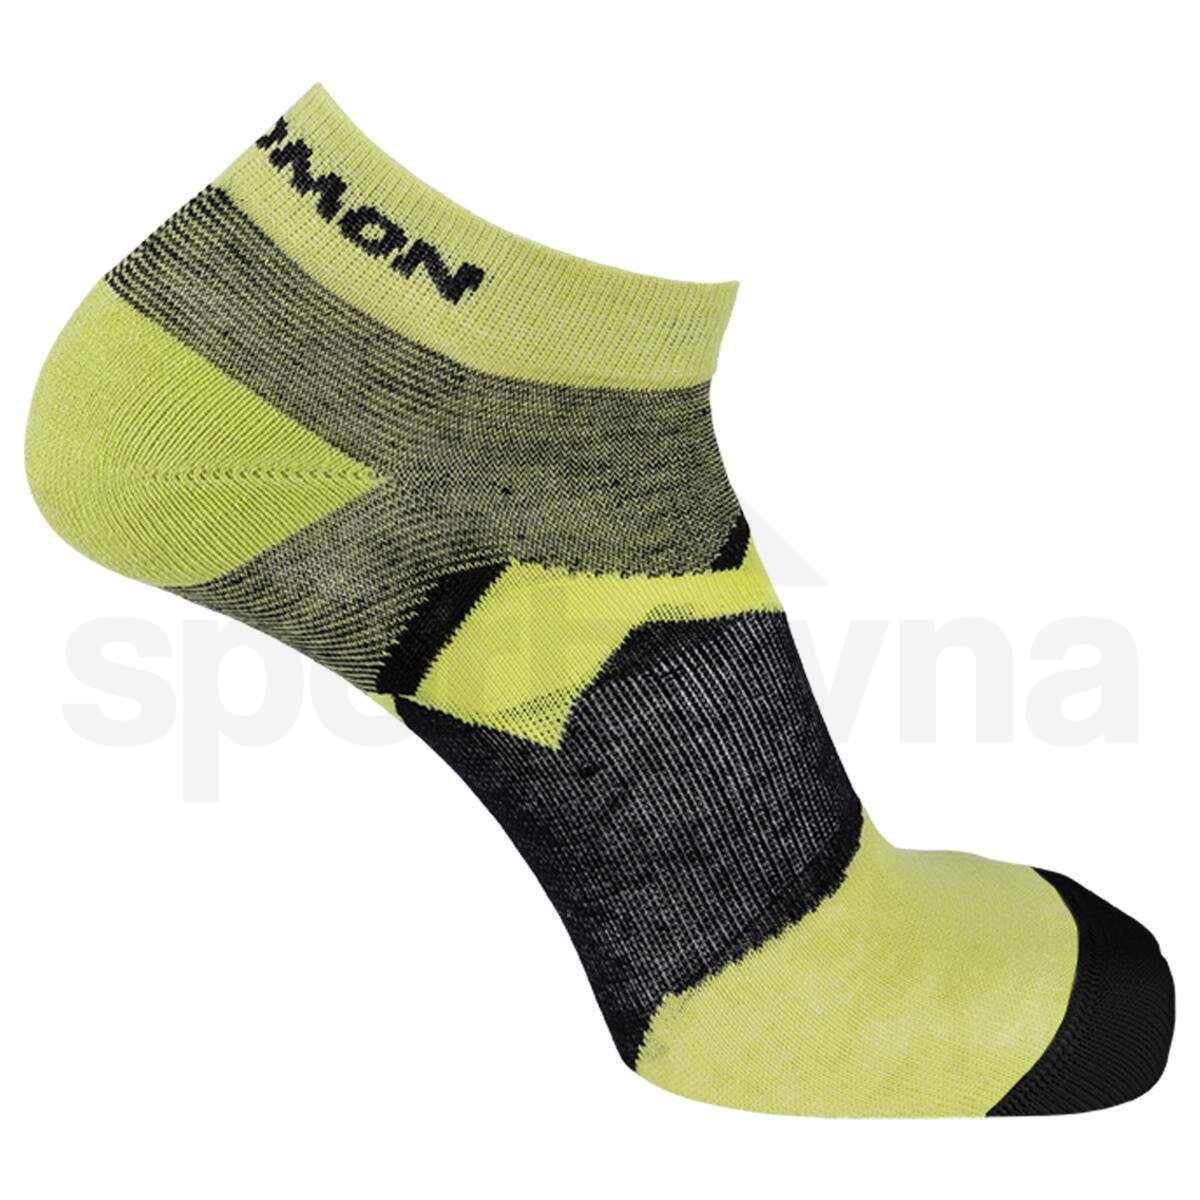 Ponožky Salomon Outline Ankle 2-Pack - modrá/zelená